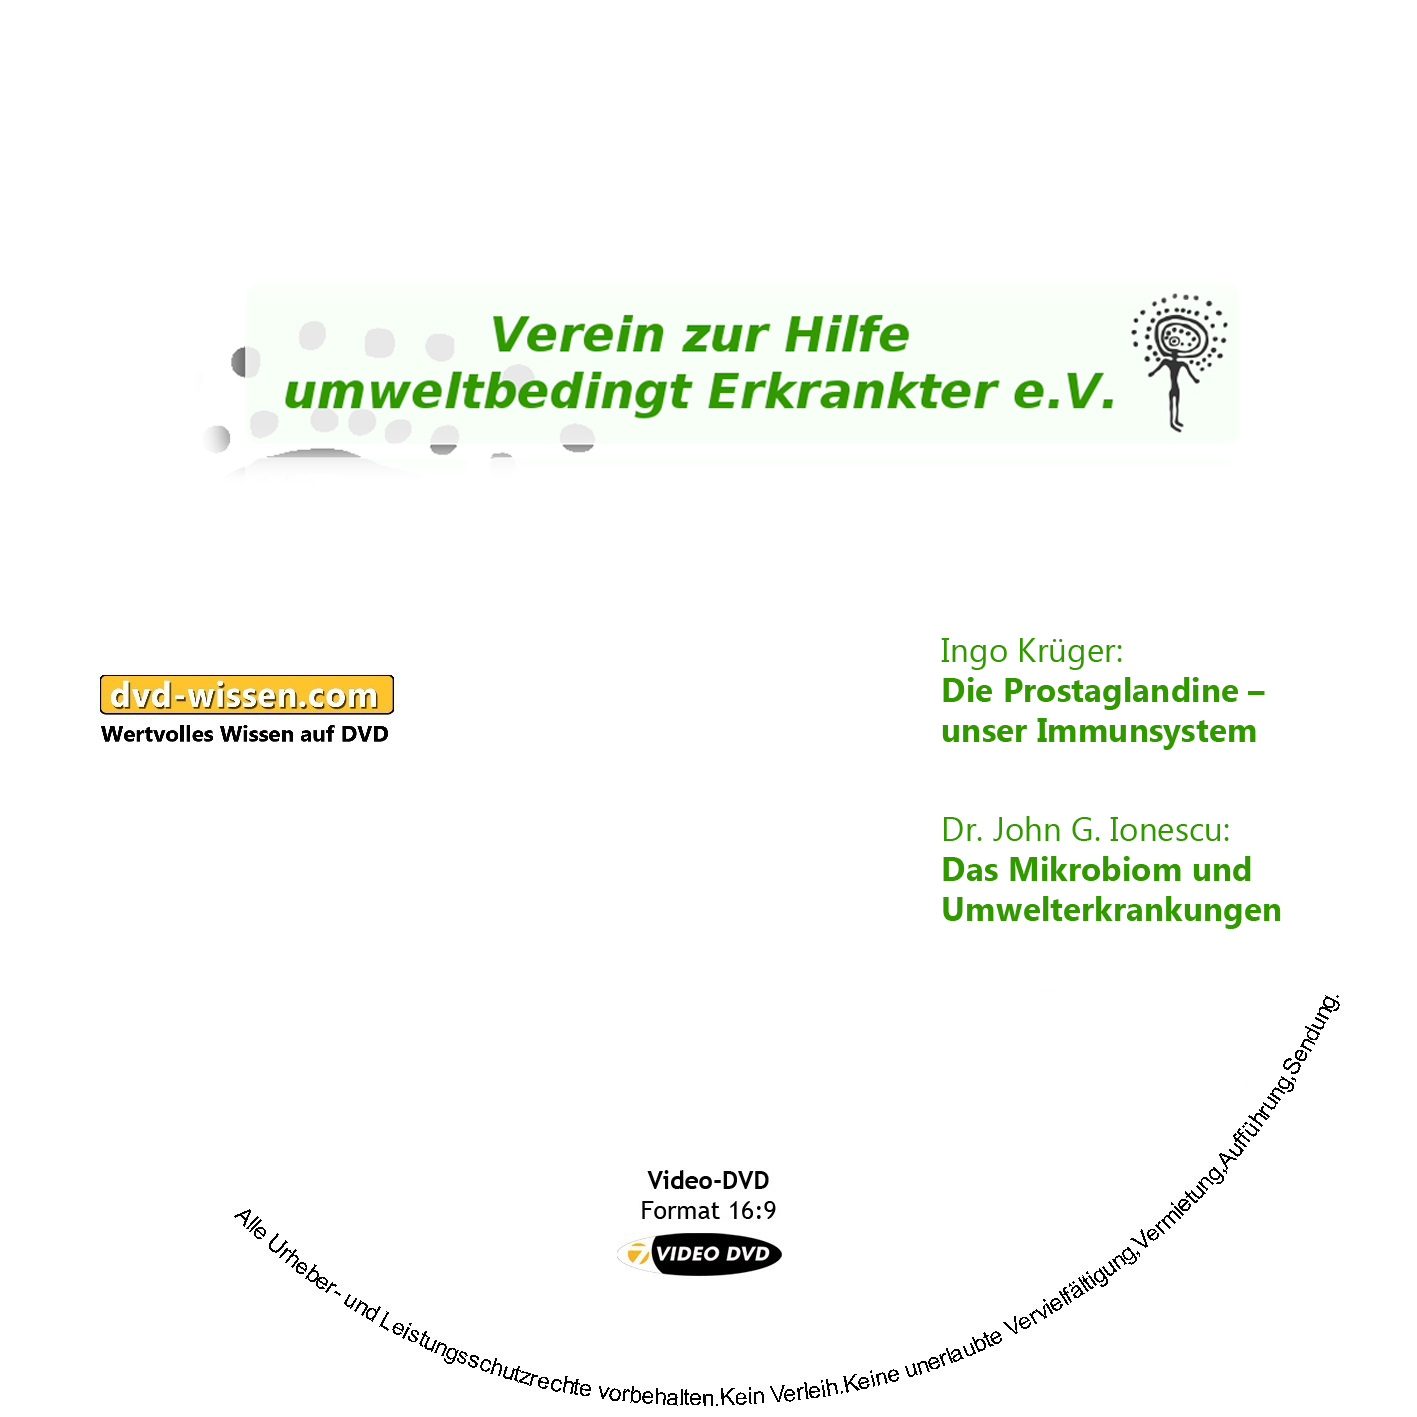 Dr. John G. Ionescu, Ingo Krüger, Prof. Dr. Wolfgang Huber, Gurun Mekle, Dr. med. Walter Wortberg: Komplettpaket der 10. Umwelttagung des VHUE e.V.